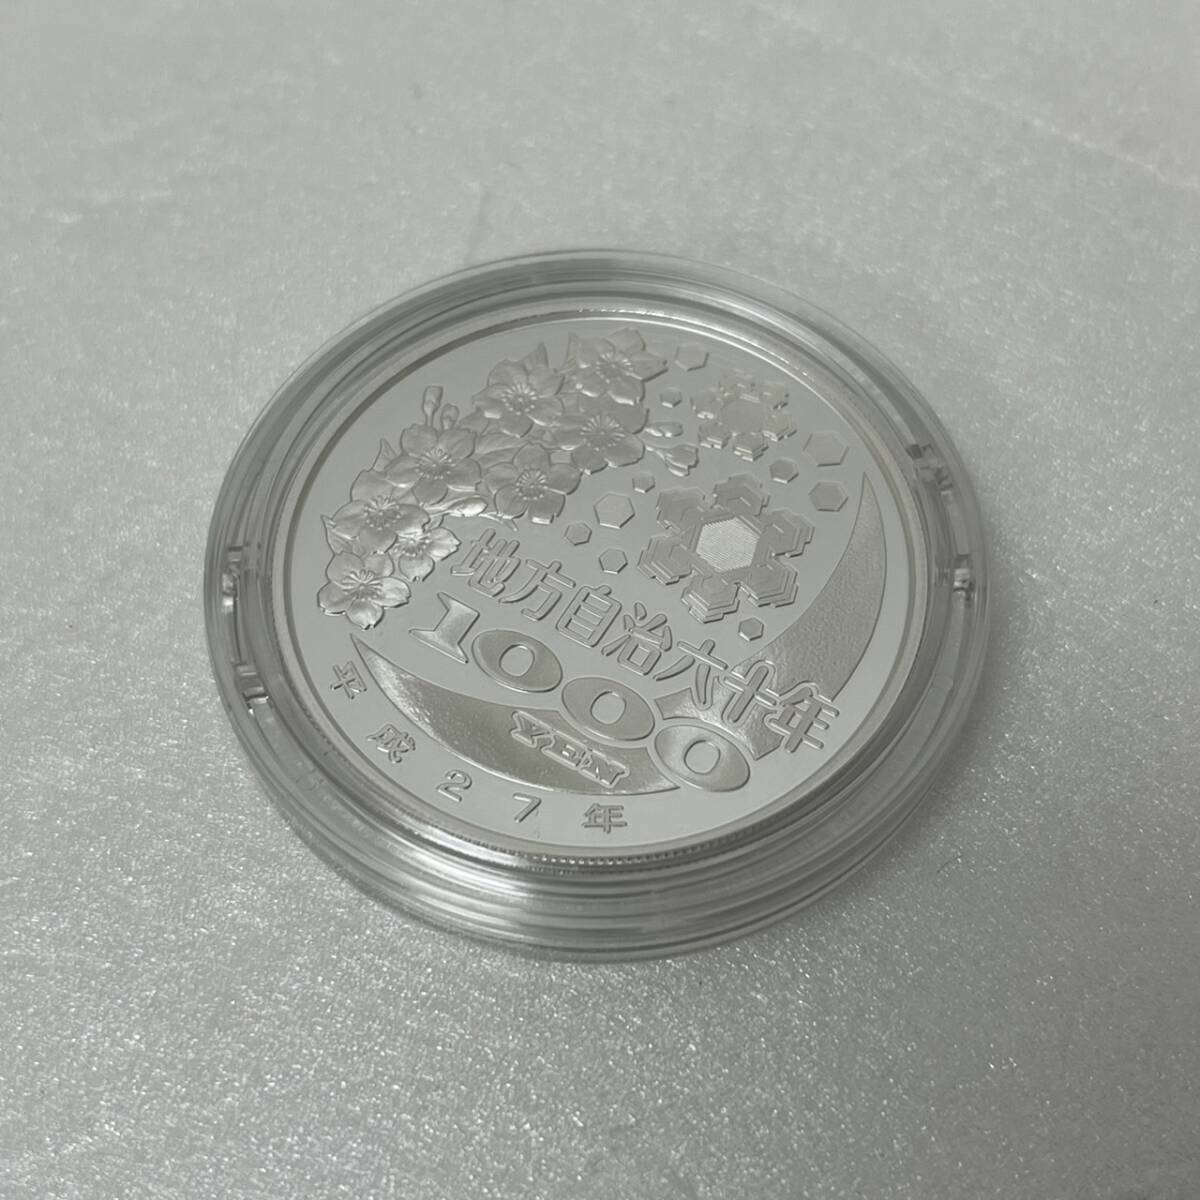 [ST18978MG] не использовался Tokushima префектура местное самоуправление закон . line 60 anniversary commemoration тысяч иен серебряная монета . устойчивый деньги B комплект памятная серебряная монета цвет монета структура . отдел 1000 иен серебряная монета 